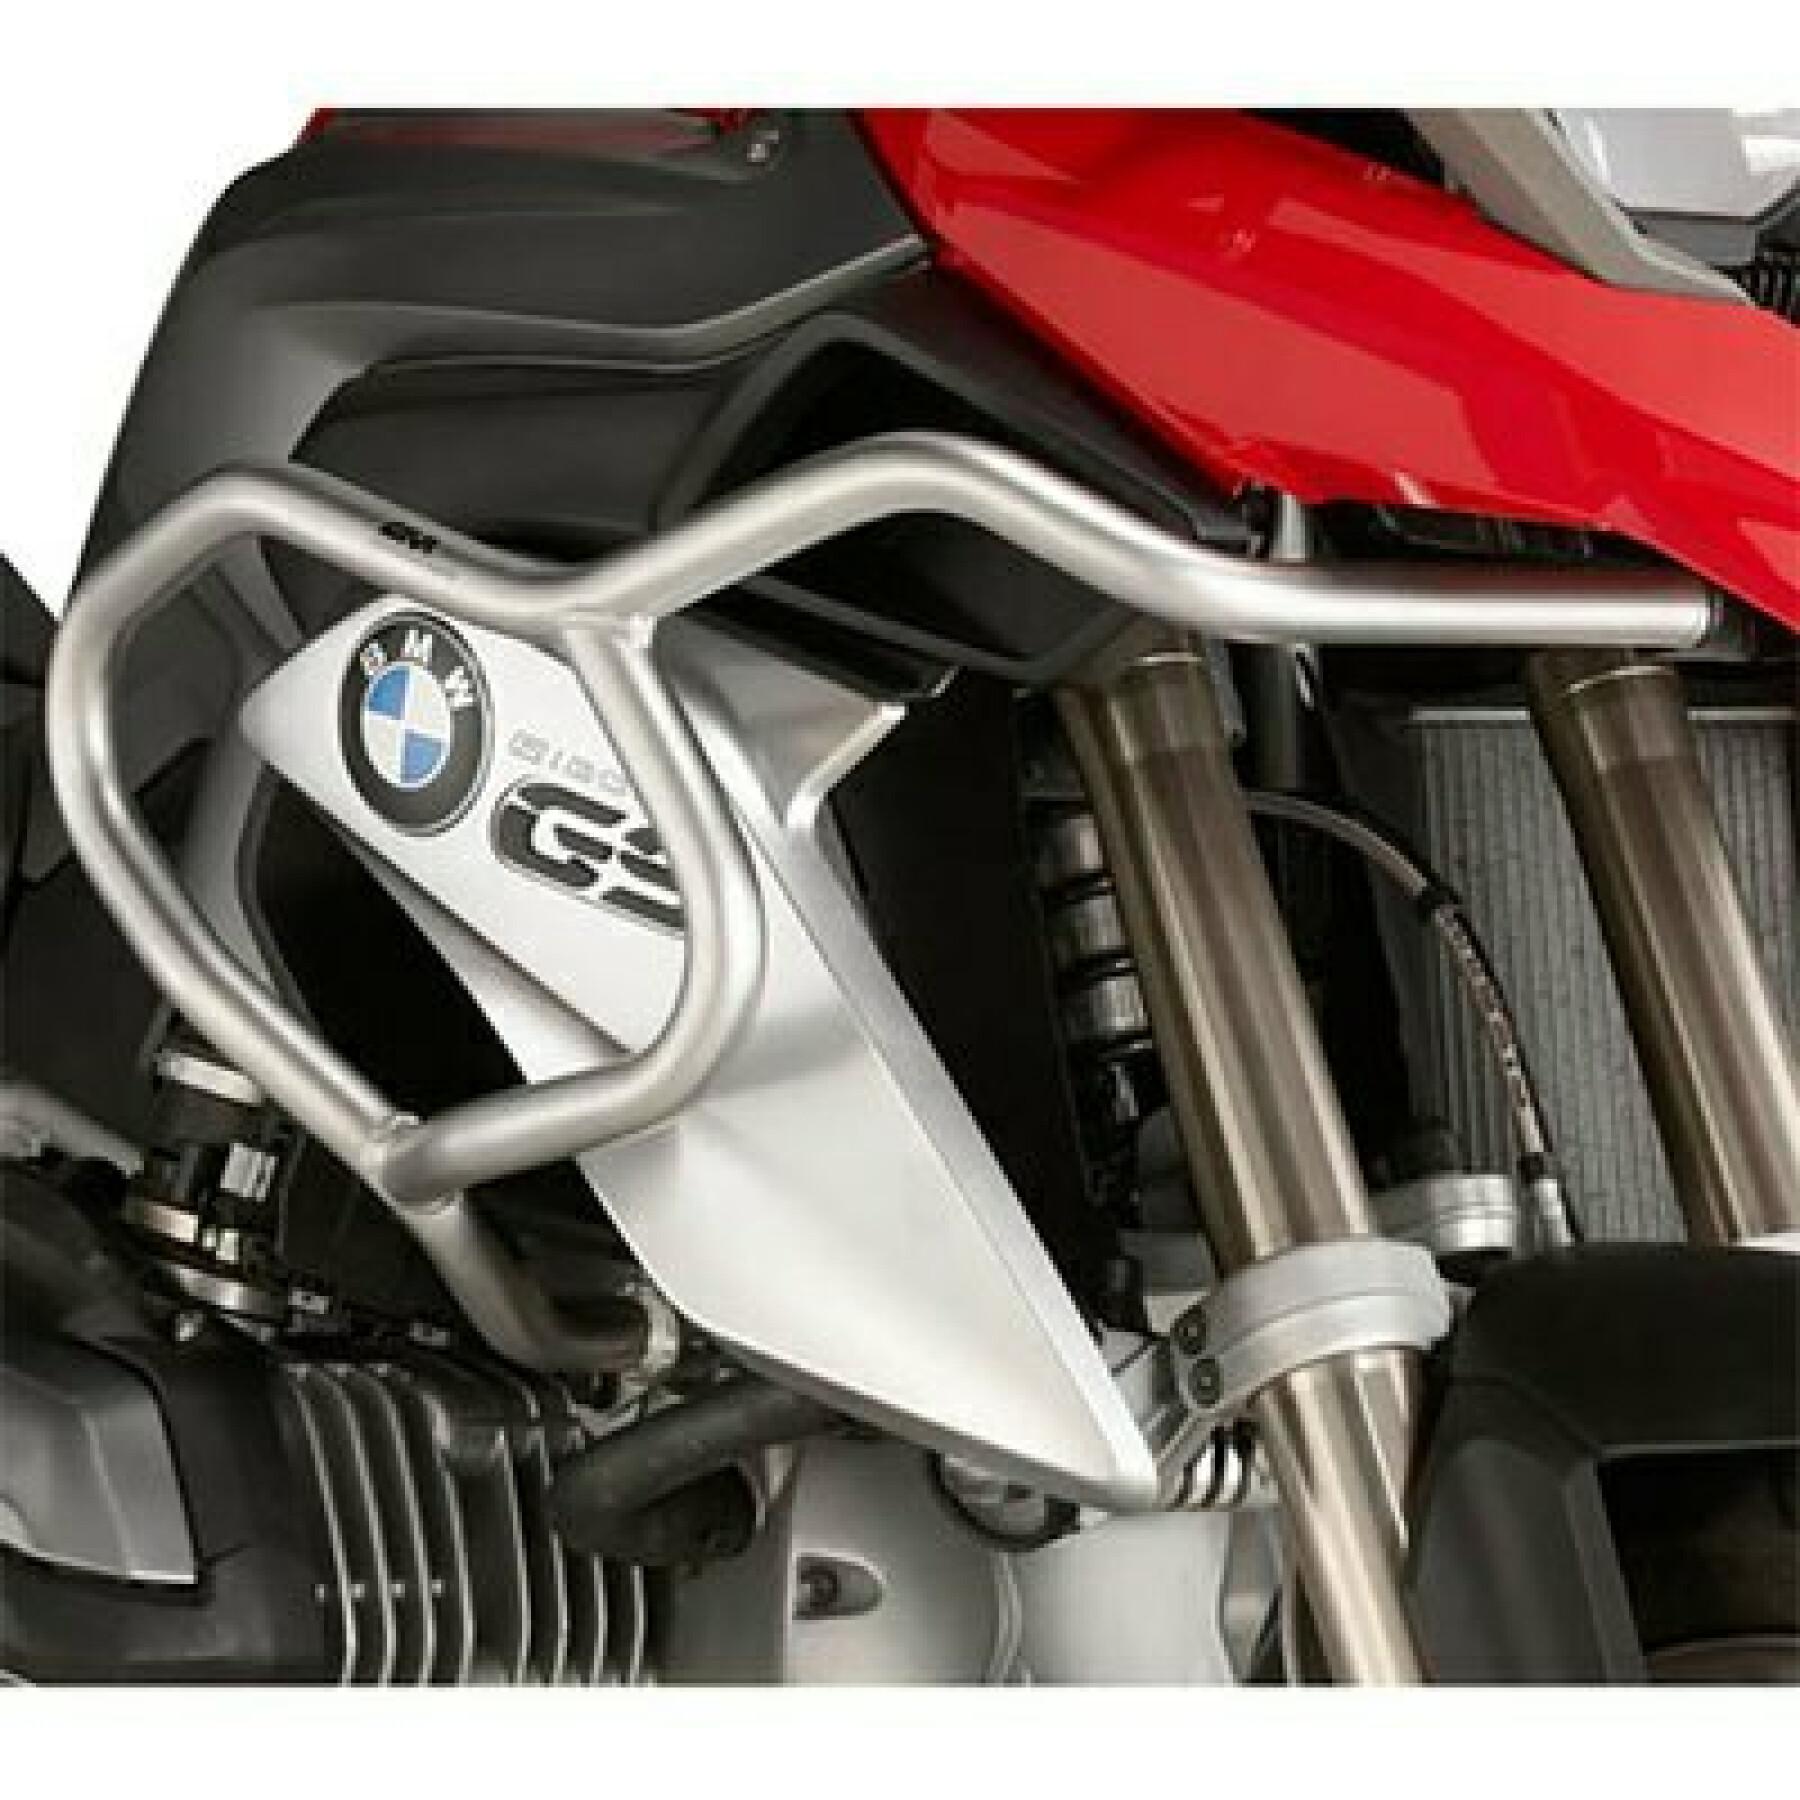 Protecciones para motos Givi Triumph Tiger 800 Xc/800 Xr (18 à 19)